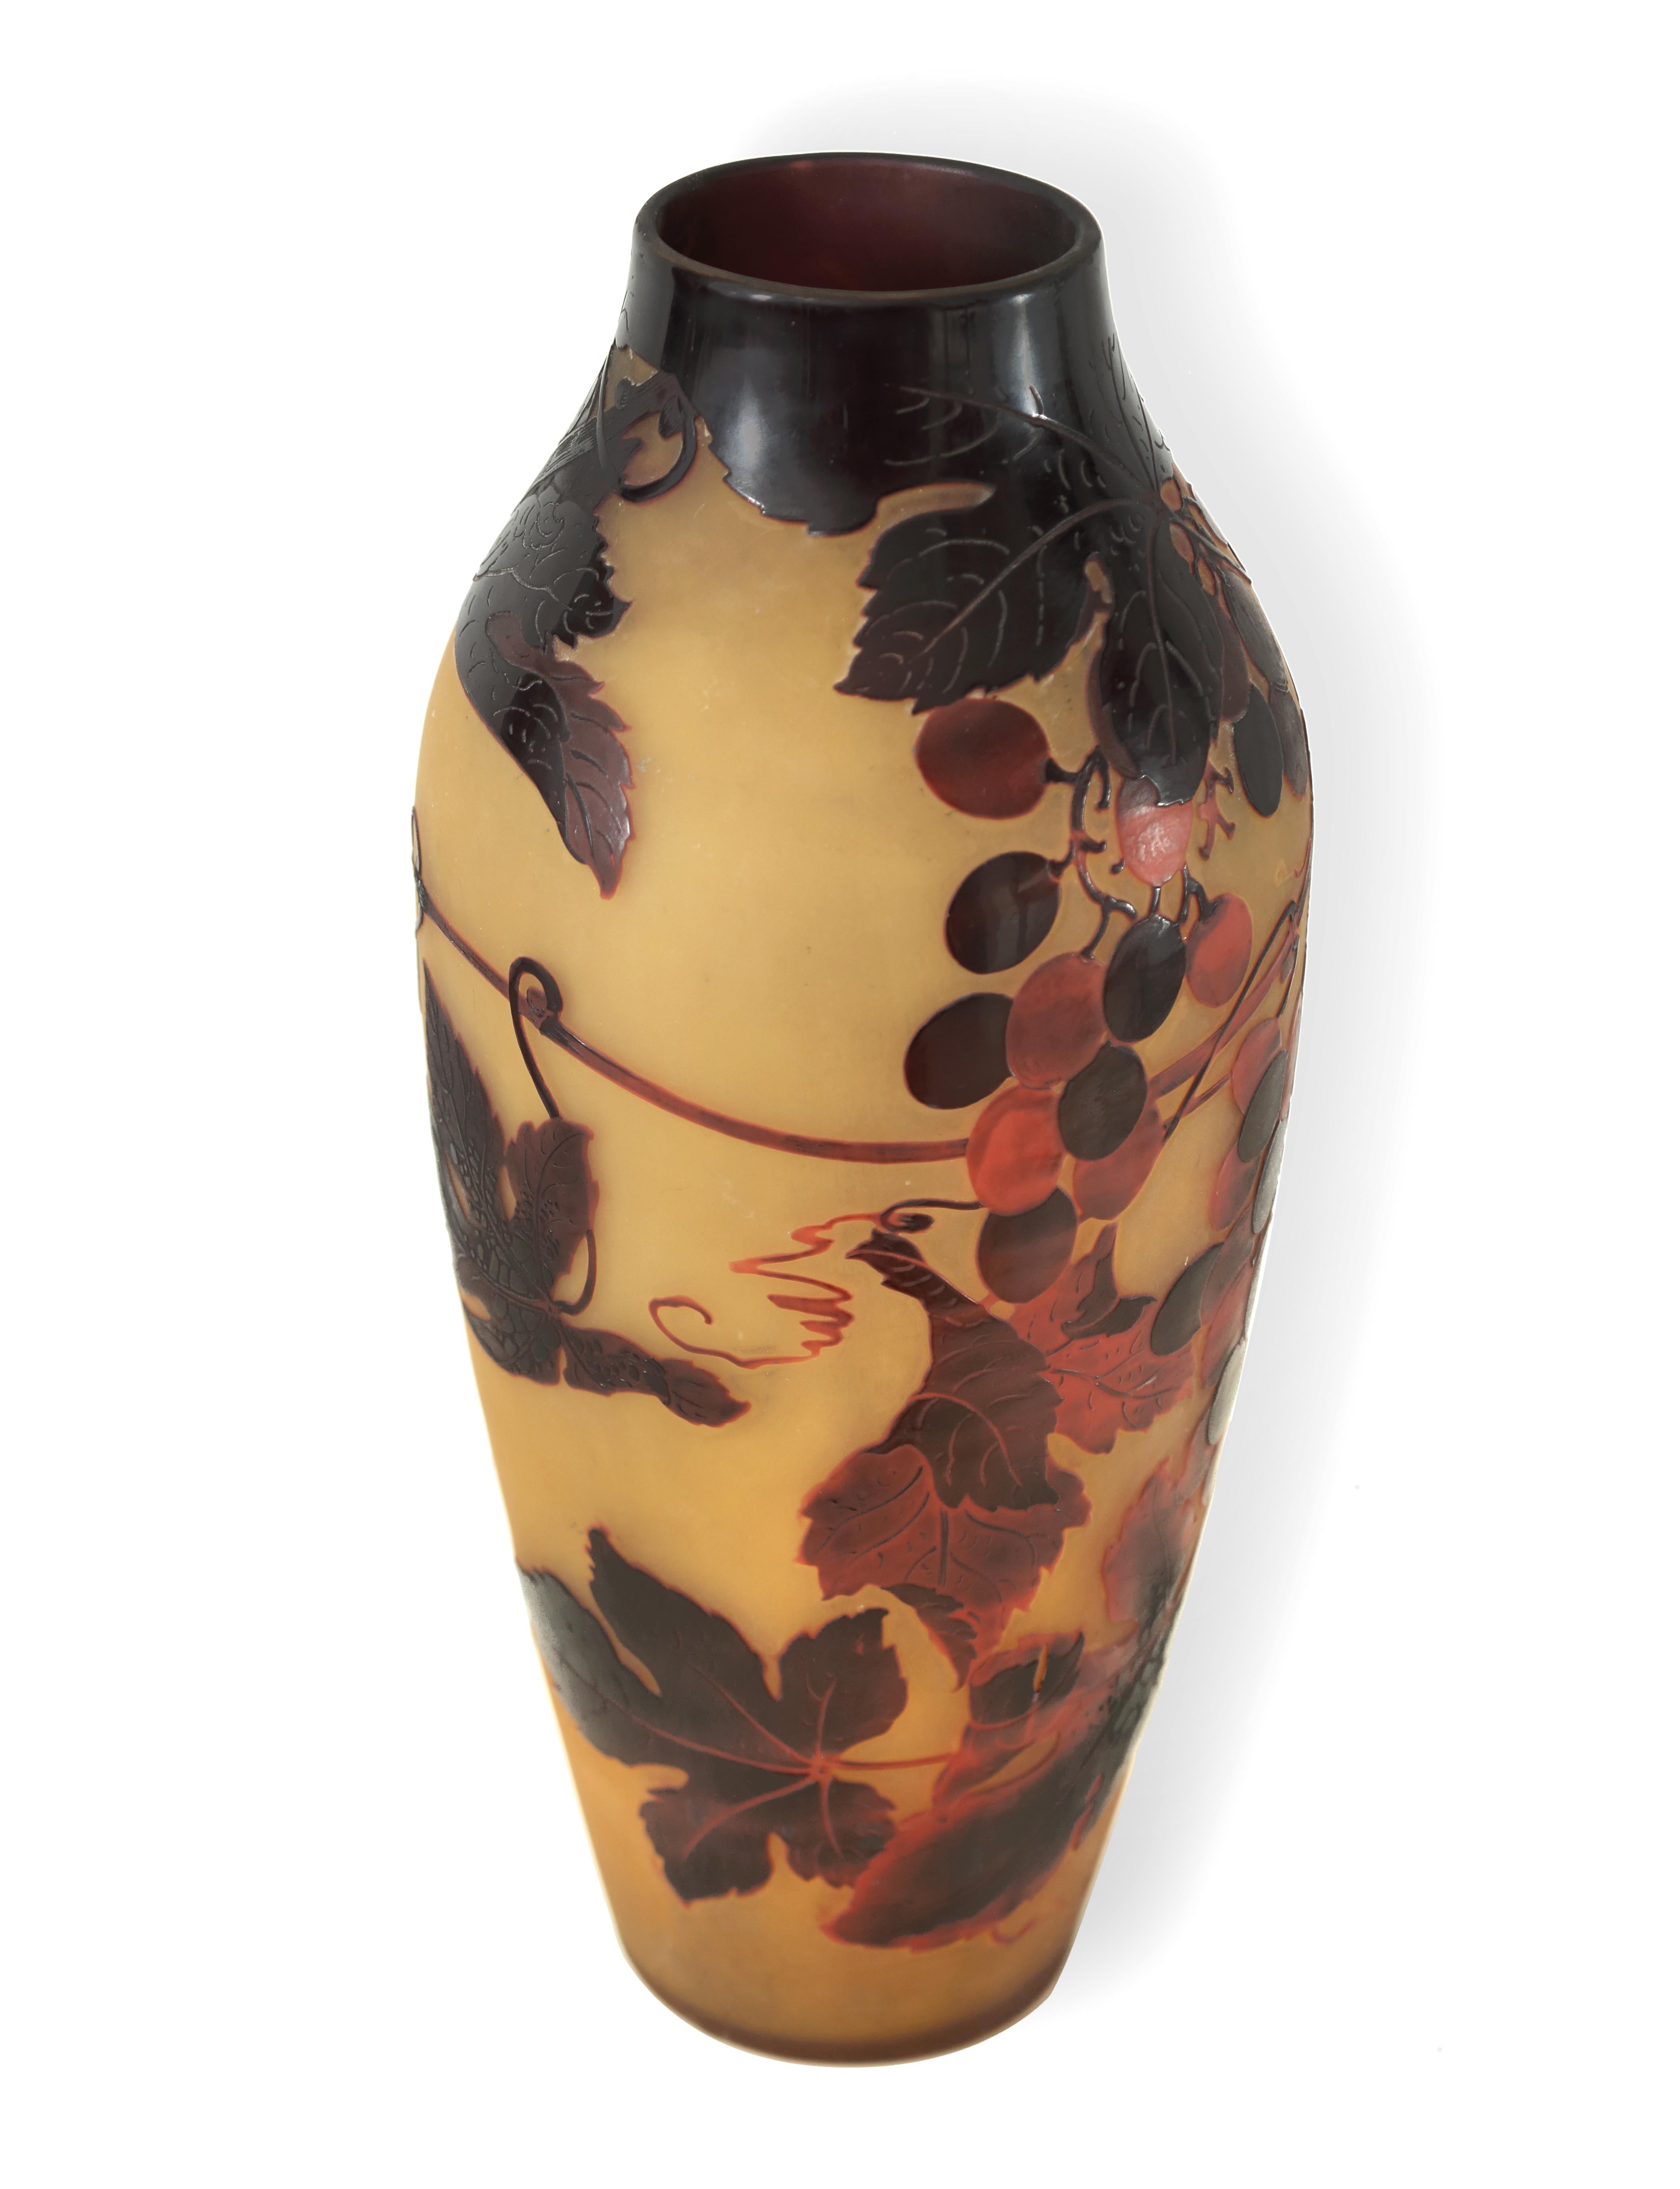 Vase monumental en verre d'art Art Noveau rouge et jaune, gravé à l'acide et en camée. Magnifique vase décoratif Art Déco-Art Nouveau. L'état est bon, avec une usure correspondant à l'âge et à l'utilisation.